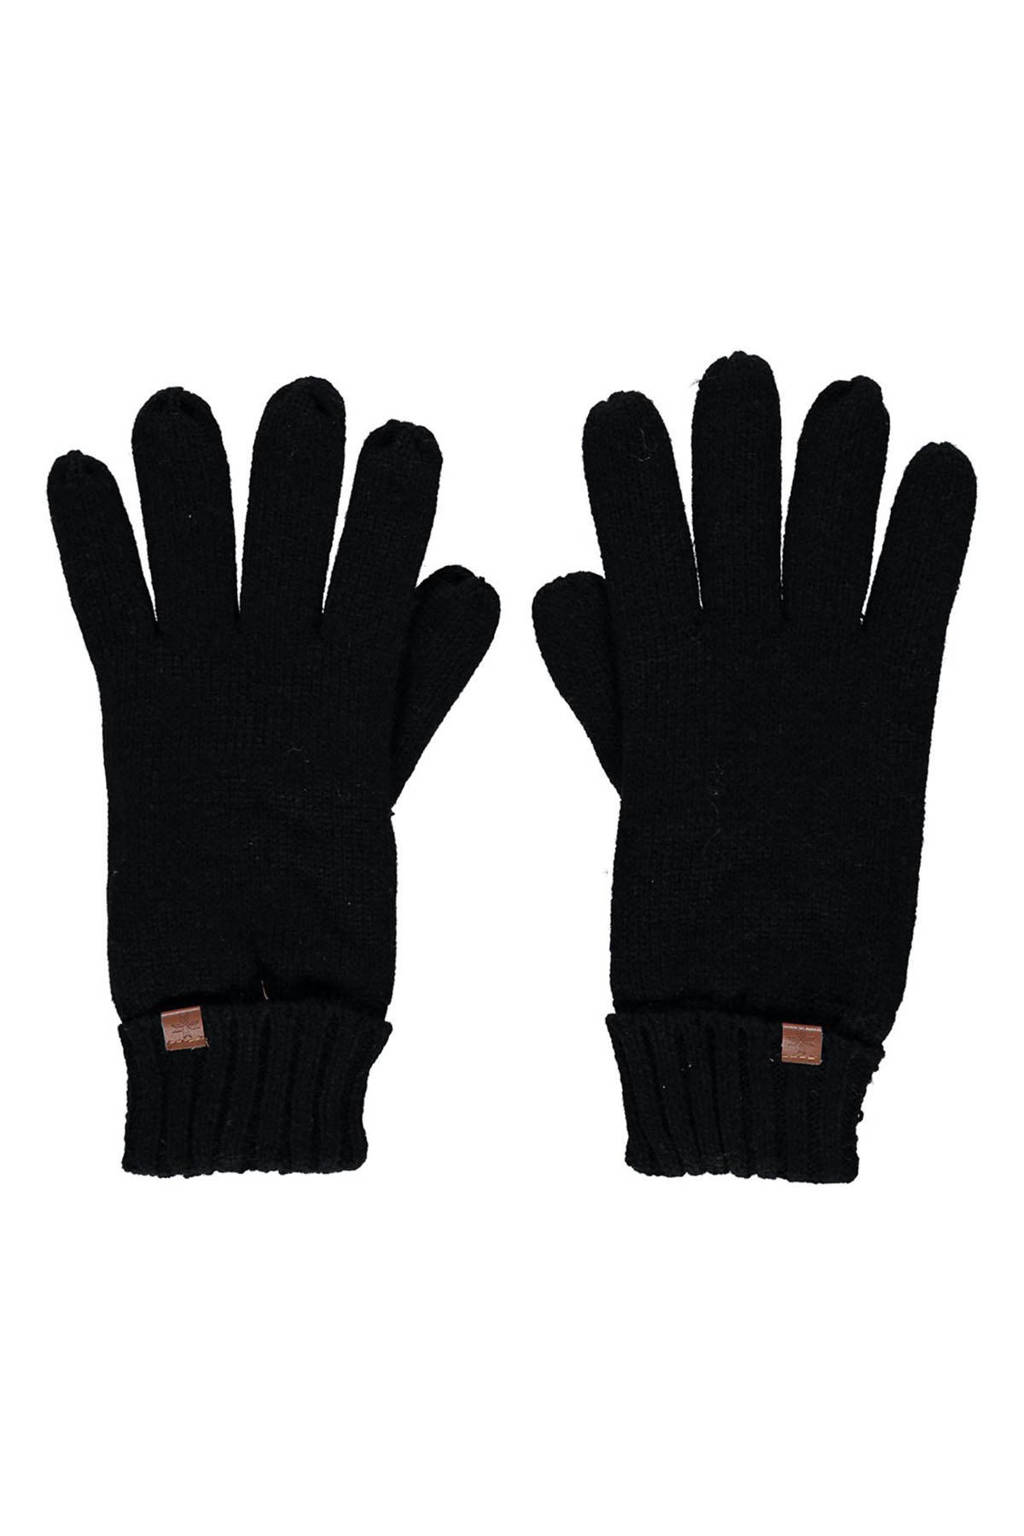 Sarlini handschoenen zwart, Zwart